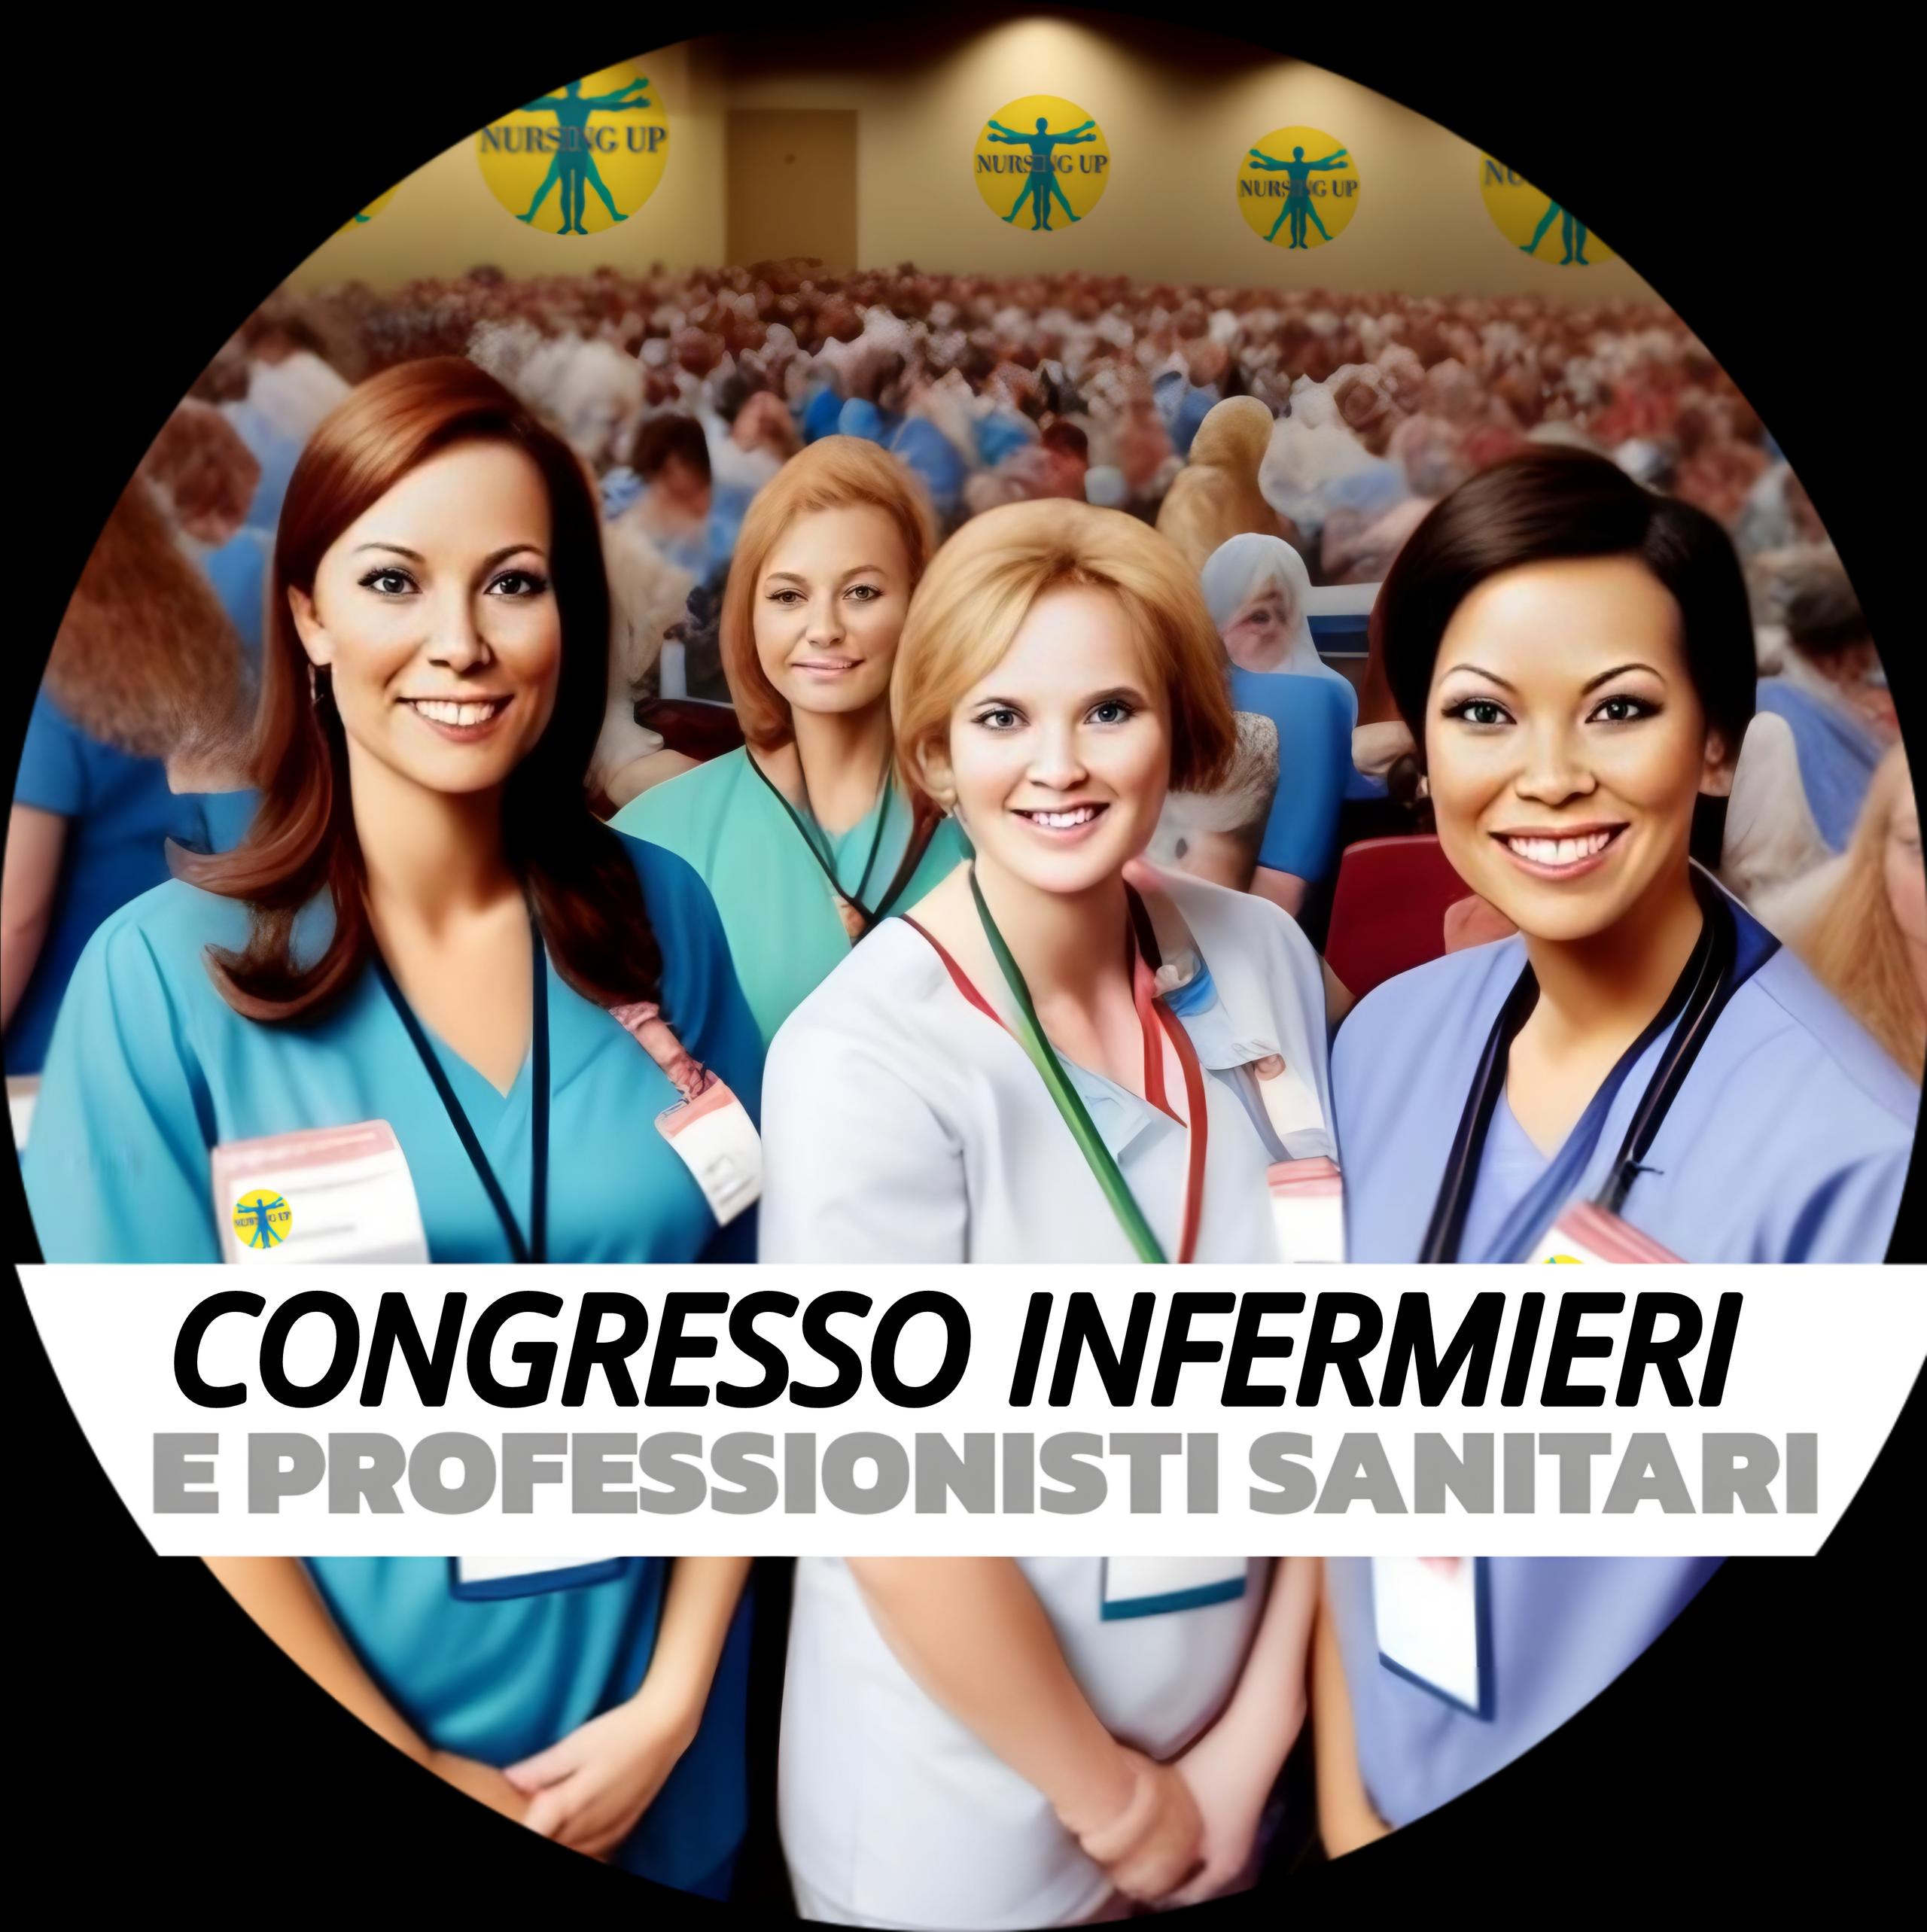 Importante congresso dedicato a infermieri e professionisti sanitari